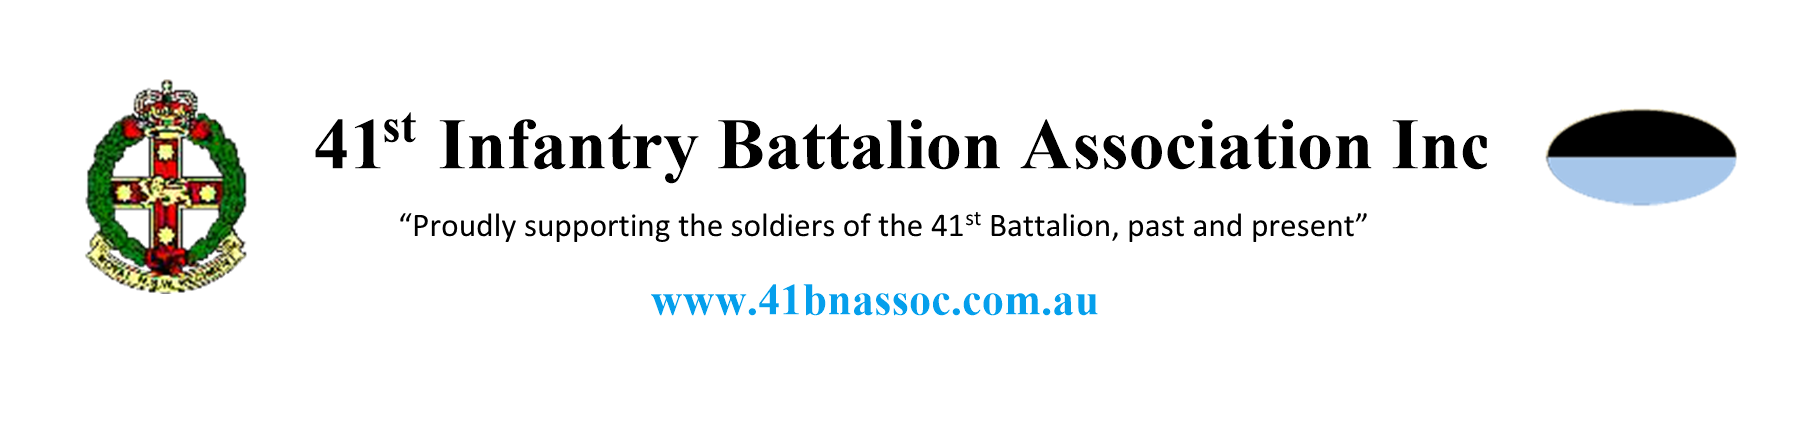 41st Infantry Battalion Association Inc